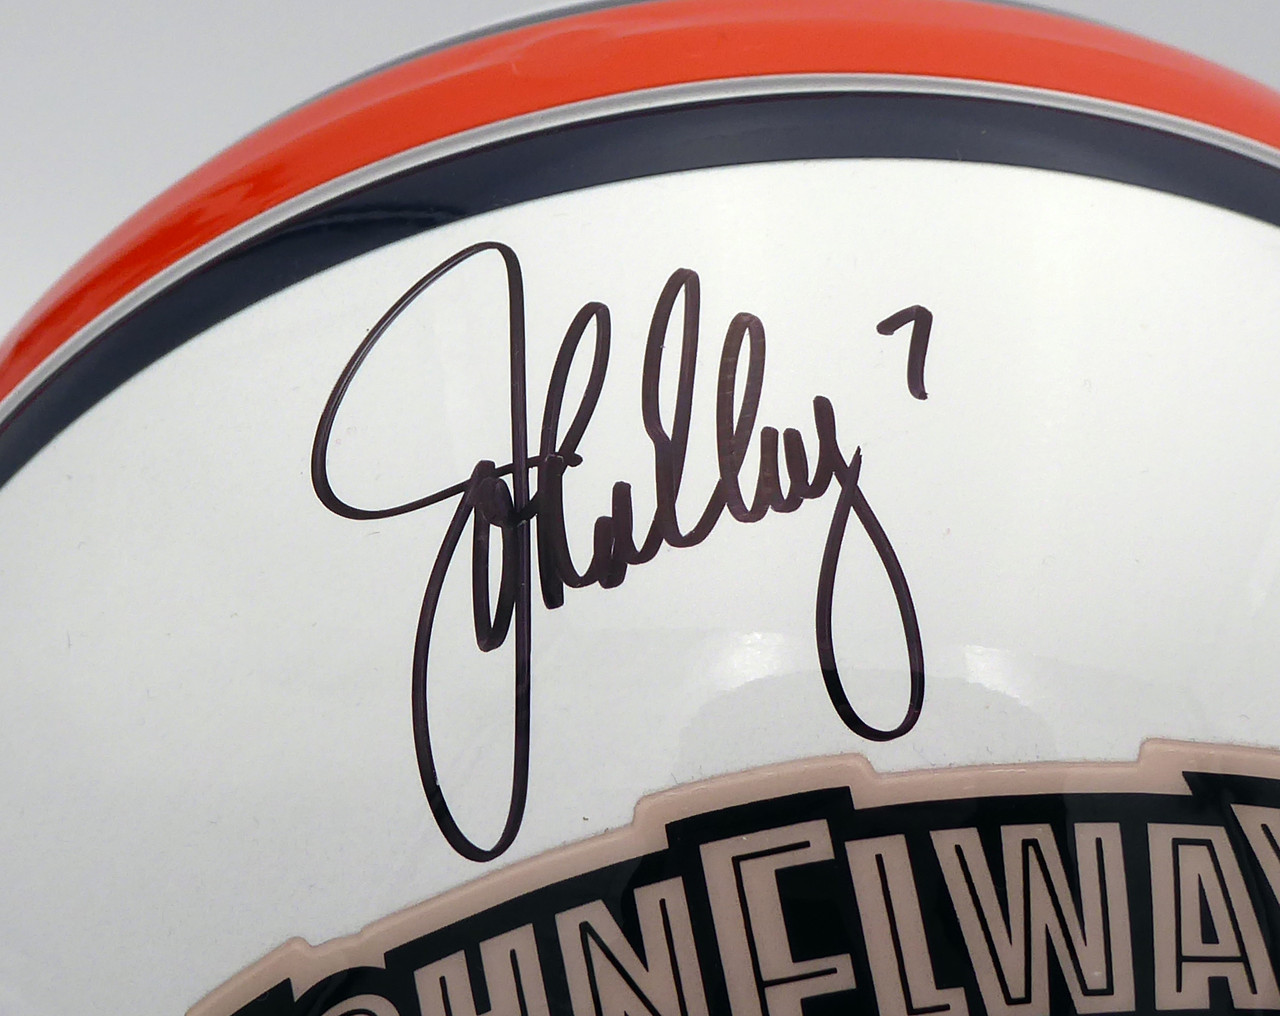 John Elway Signed Denver Broncos 4x6 Hall of Fame Card HOF 04 Inscribed BAS